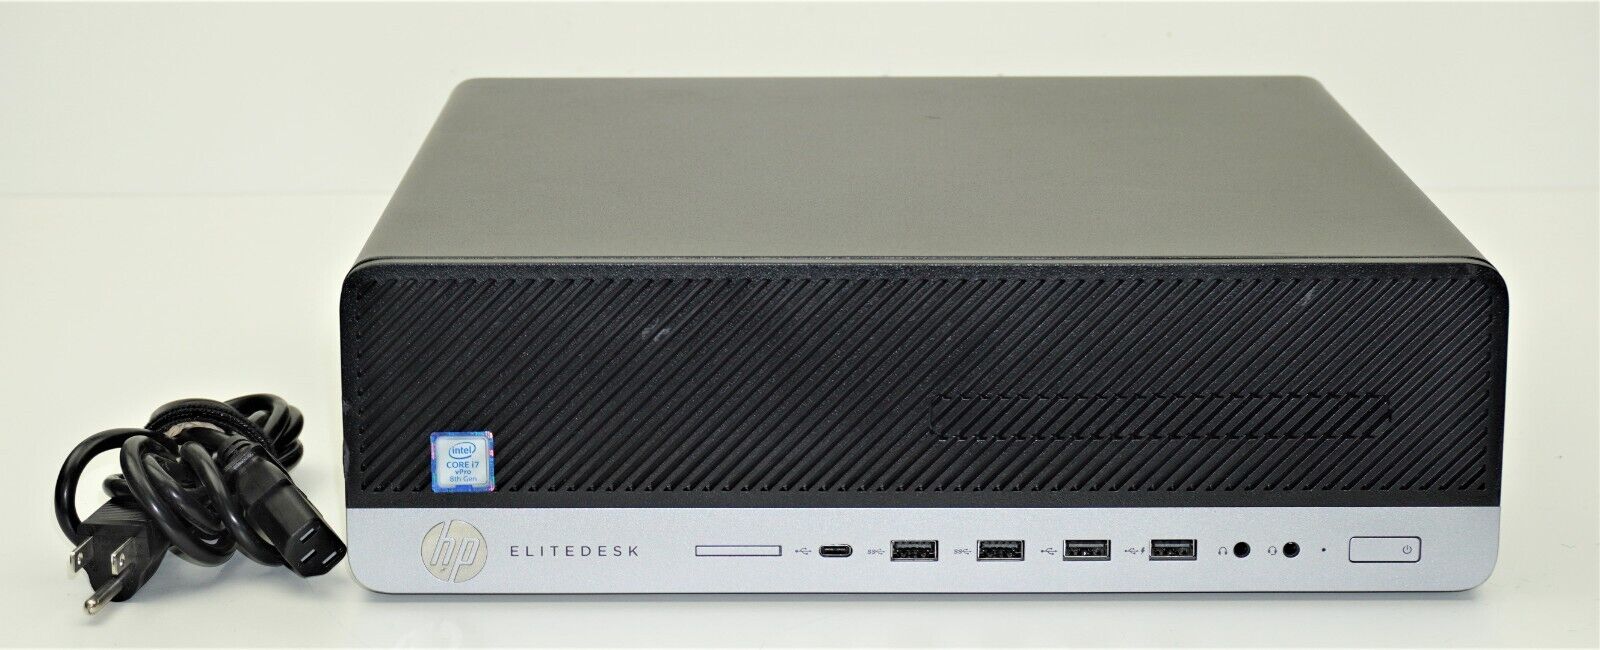 HP EliteDesk 800 G4 SFF i7-8700 @ 3.20GHz | 32Gb Ram | 500Gb HDD | Windows  10 Professional | Includes Power Cord